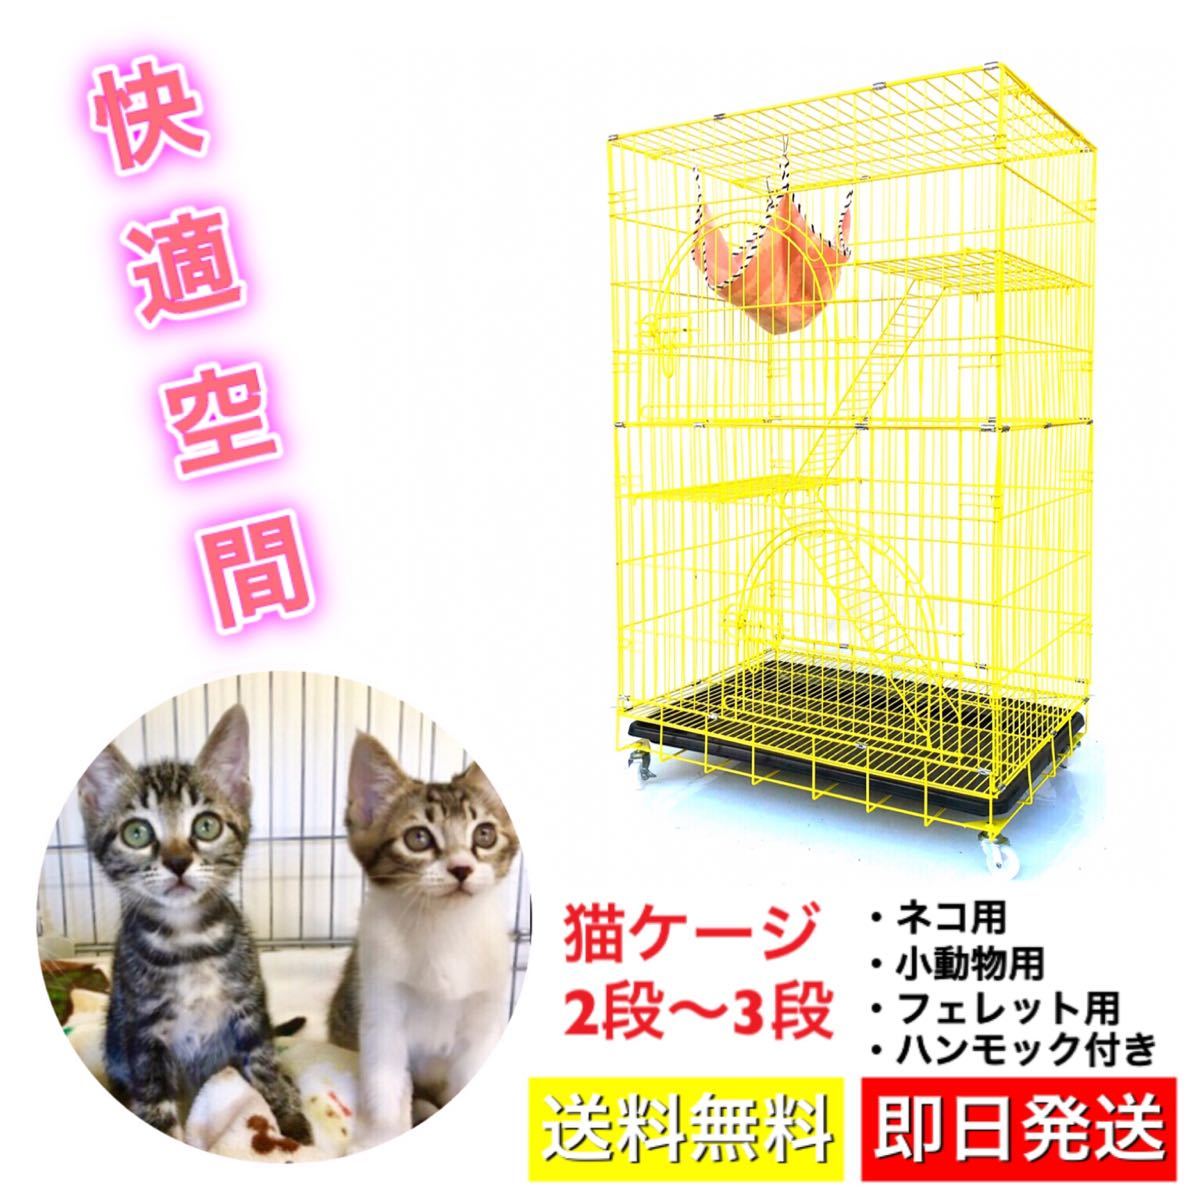 キャットケージ 猫ケージ ネコゲージ 大型 2段3段 折りたたみ式 ペットハウス 小動物 鳥 室内 快適空間 レモン イエロー 黄